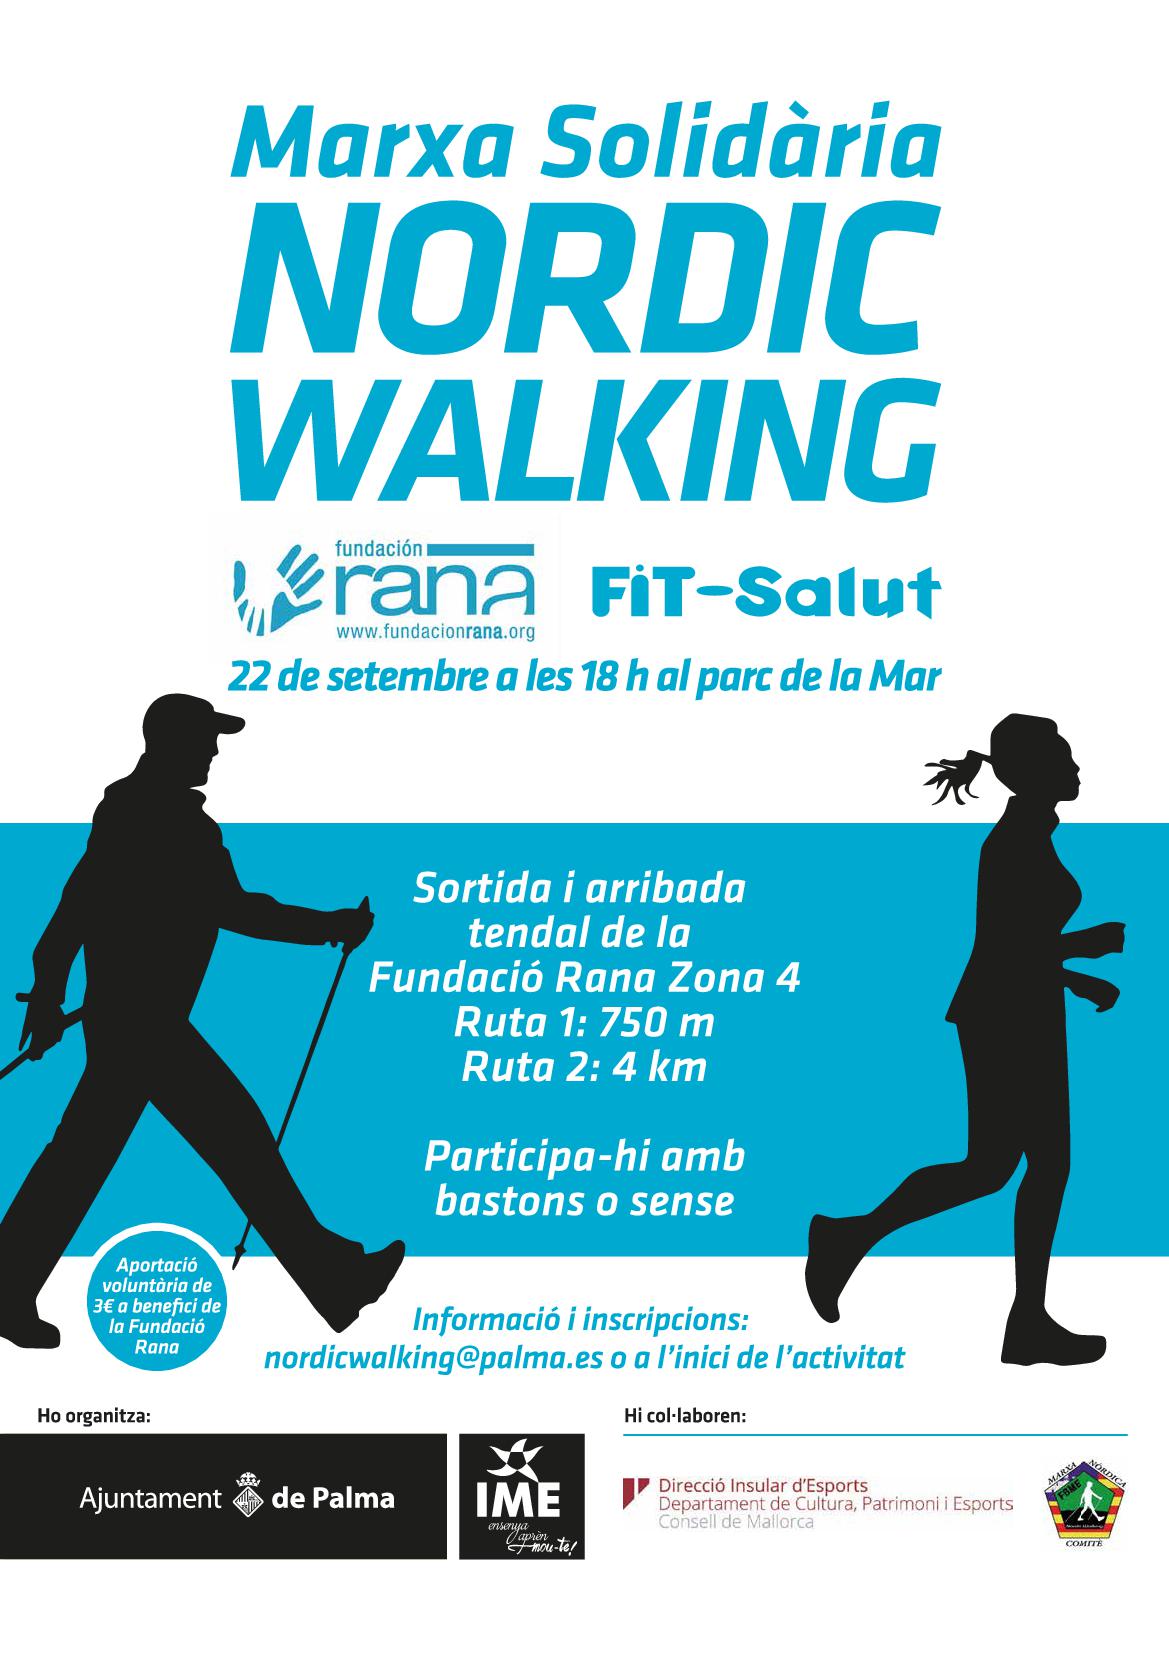 Marxa Solidària Nordic Walking Fit SAlut 2018